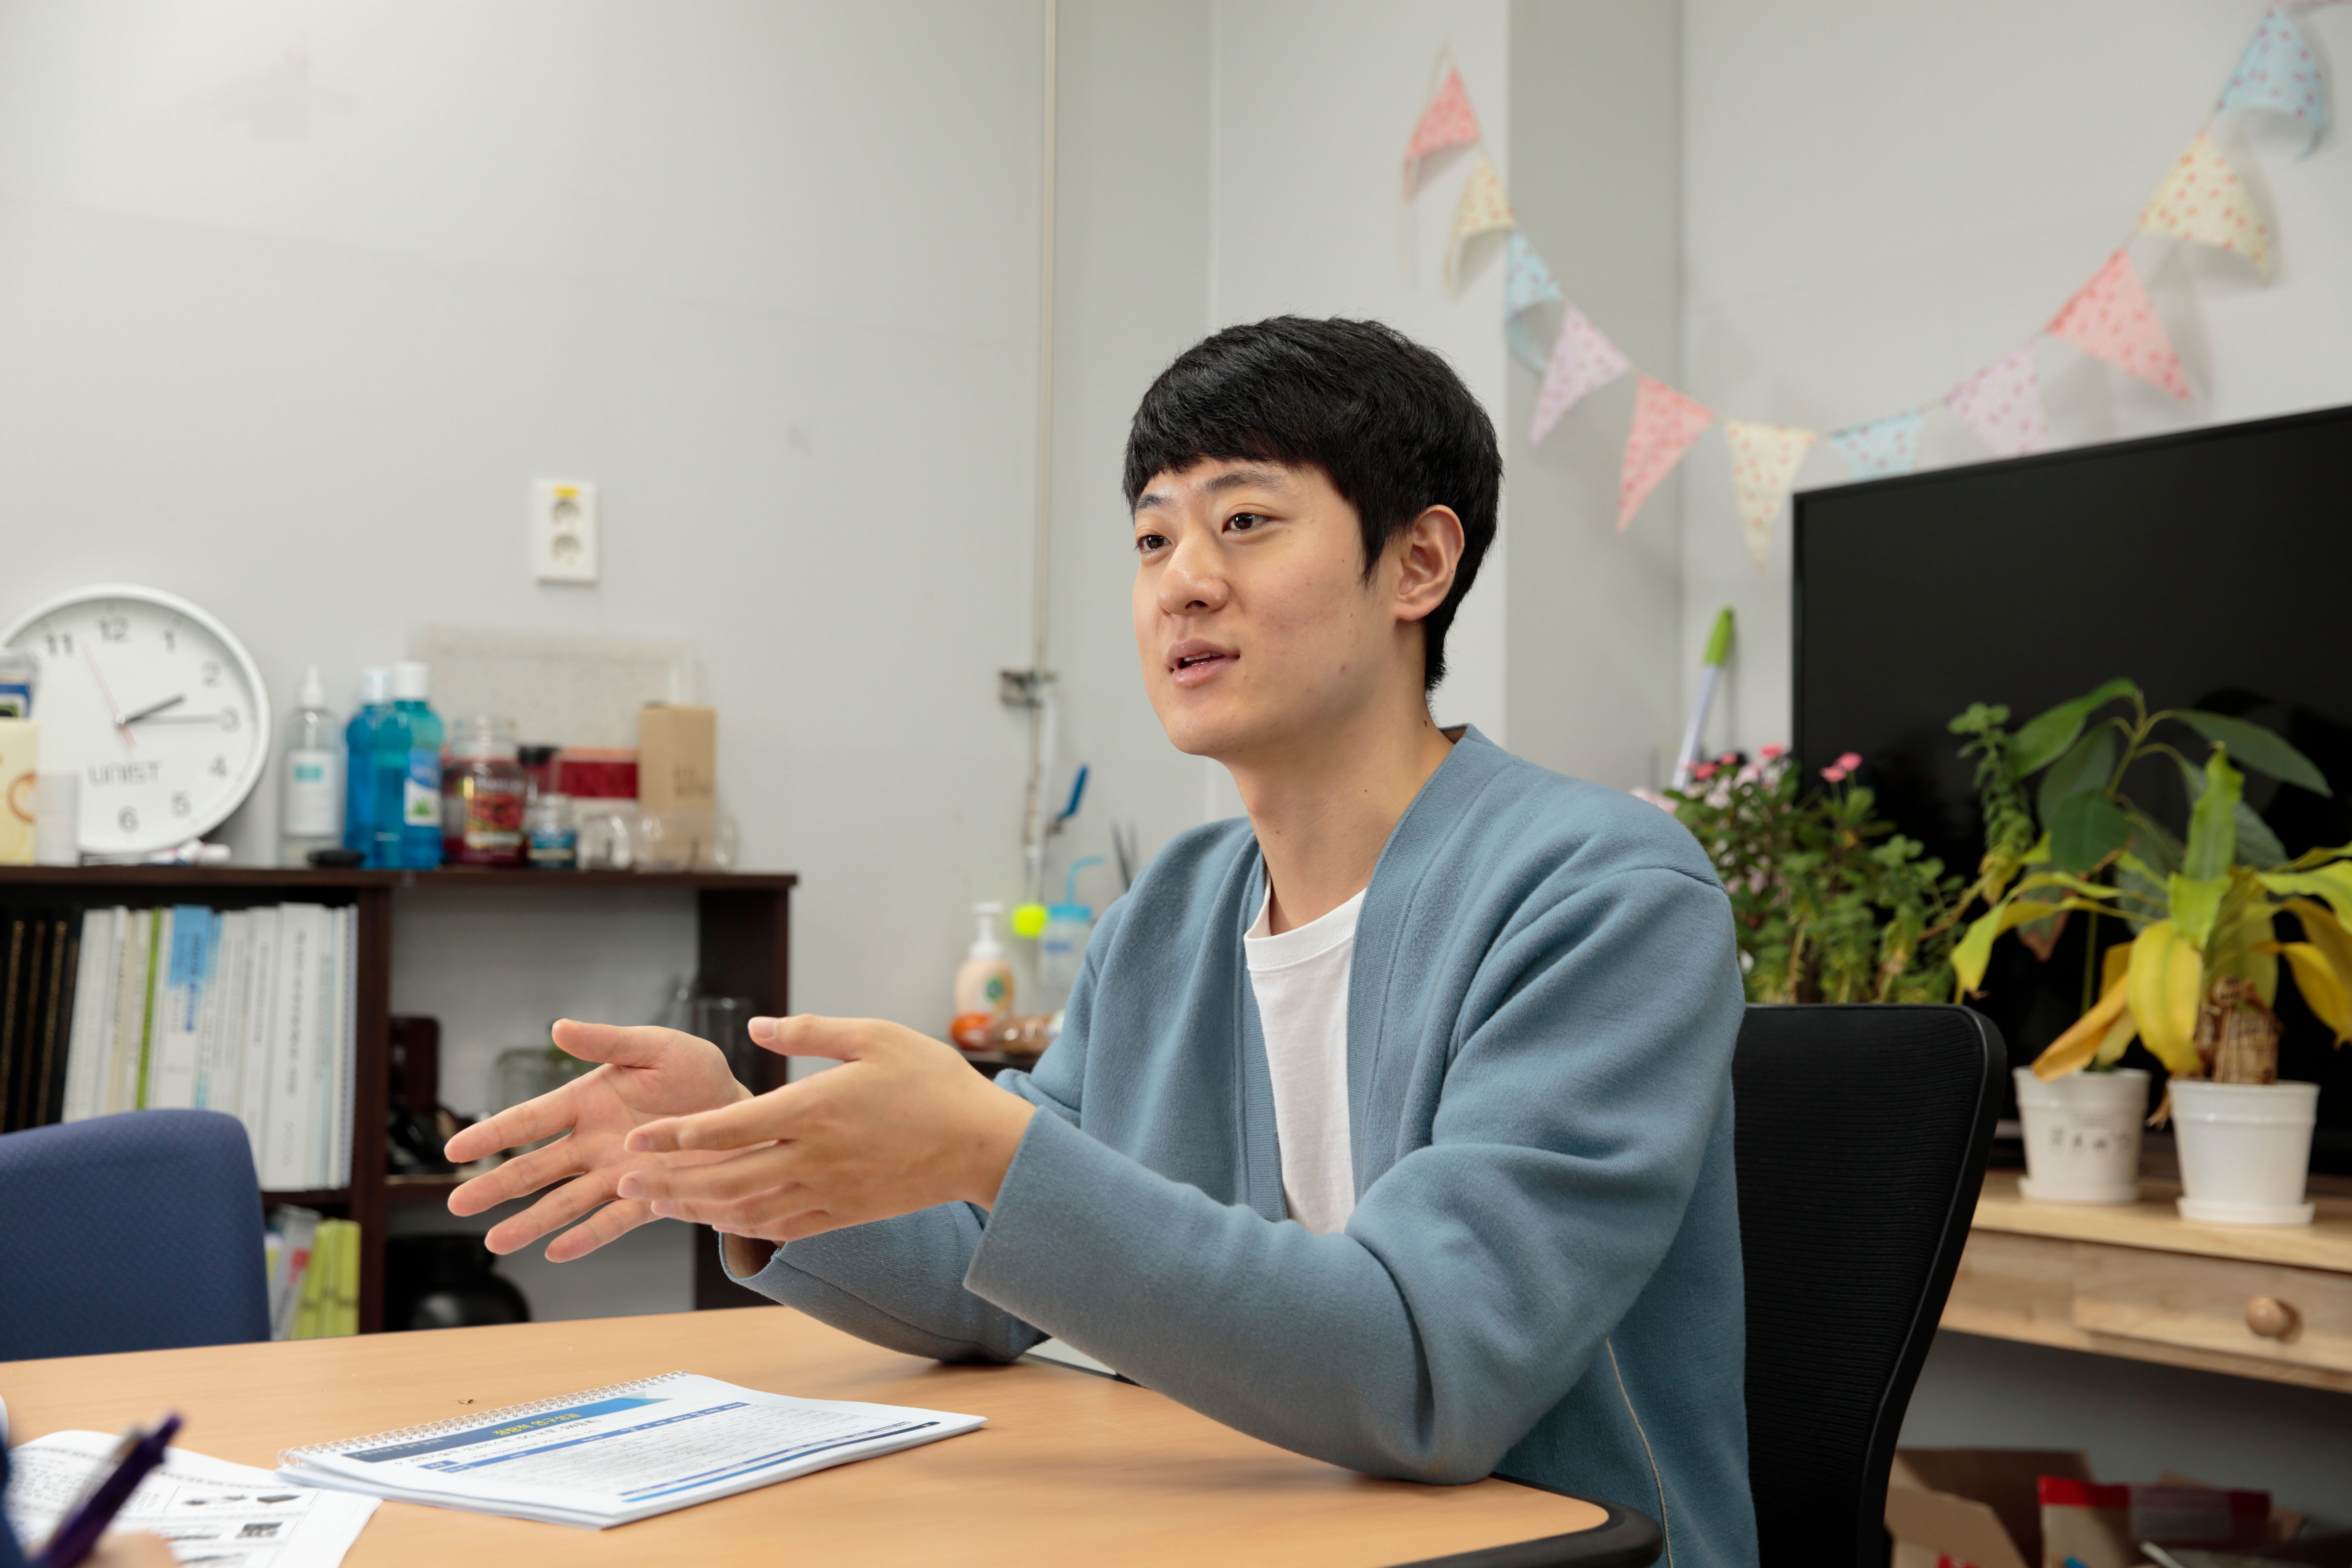 박상훈 대학원생이 우수 연구성과로 선정된 막 오염 예측 기술을 설명하고 있다. | 사진: 김경채